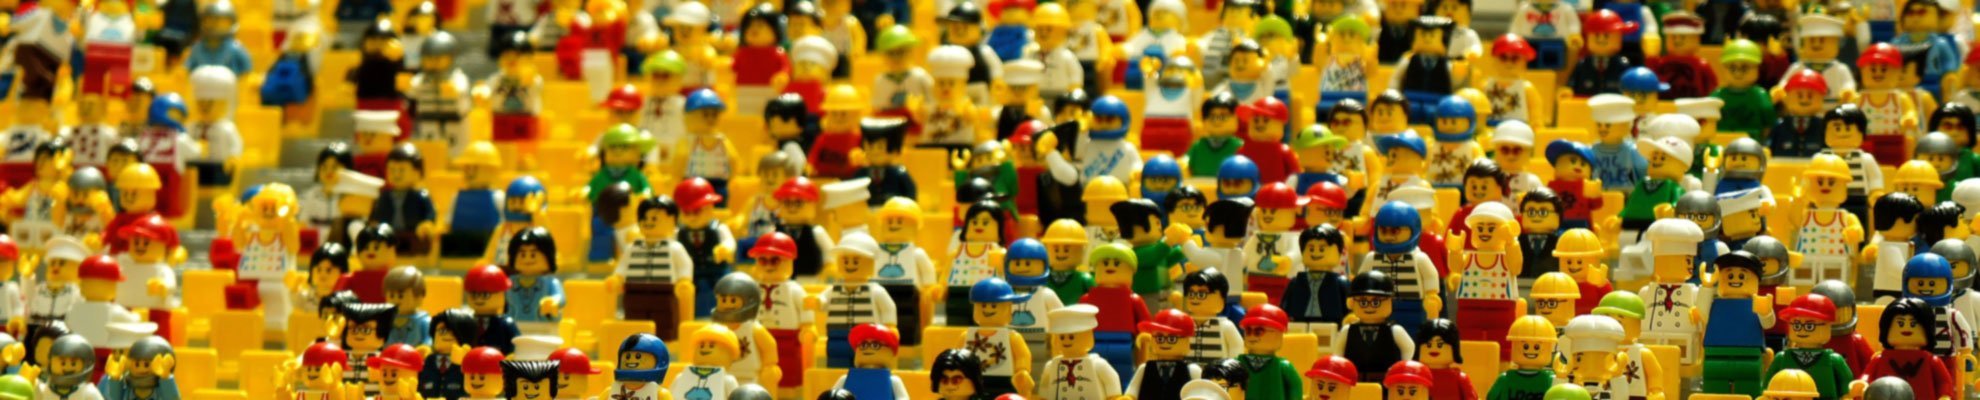 Na sliki so figure Lego kock, vse lego kocke so vidne zelo skupaj v različnih oblekah in pozicijah.